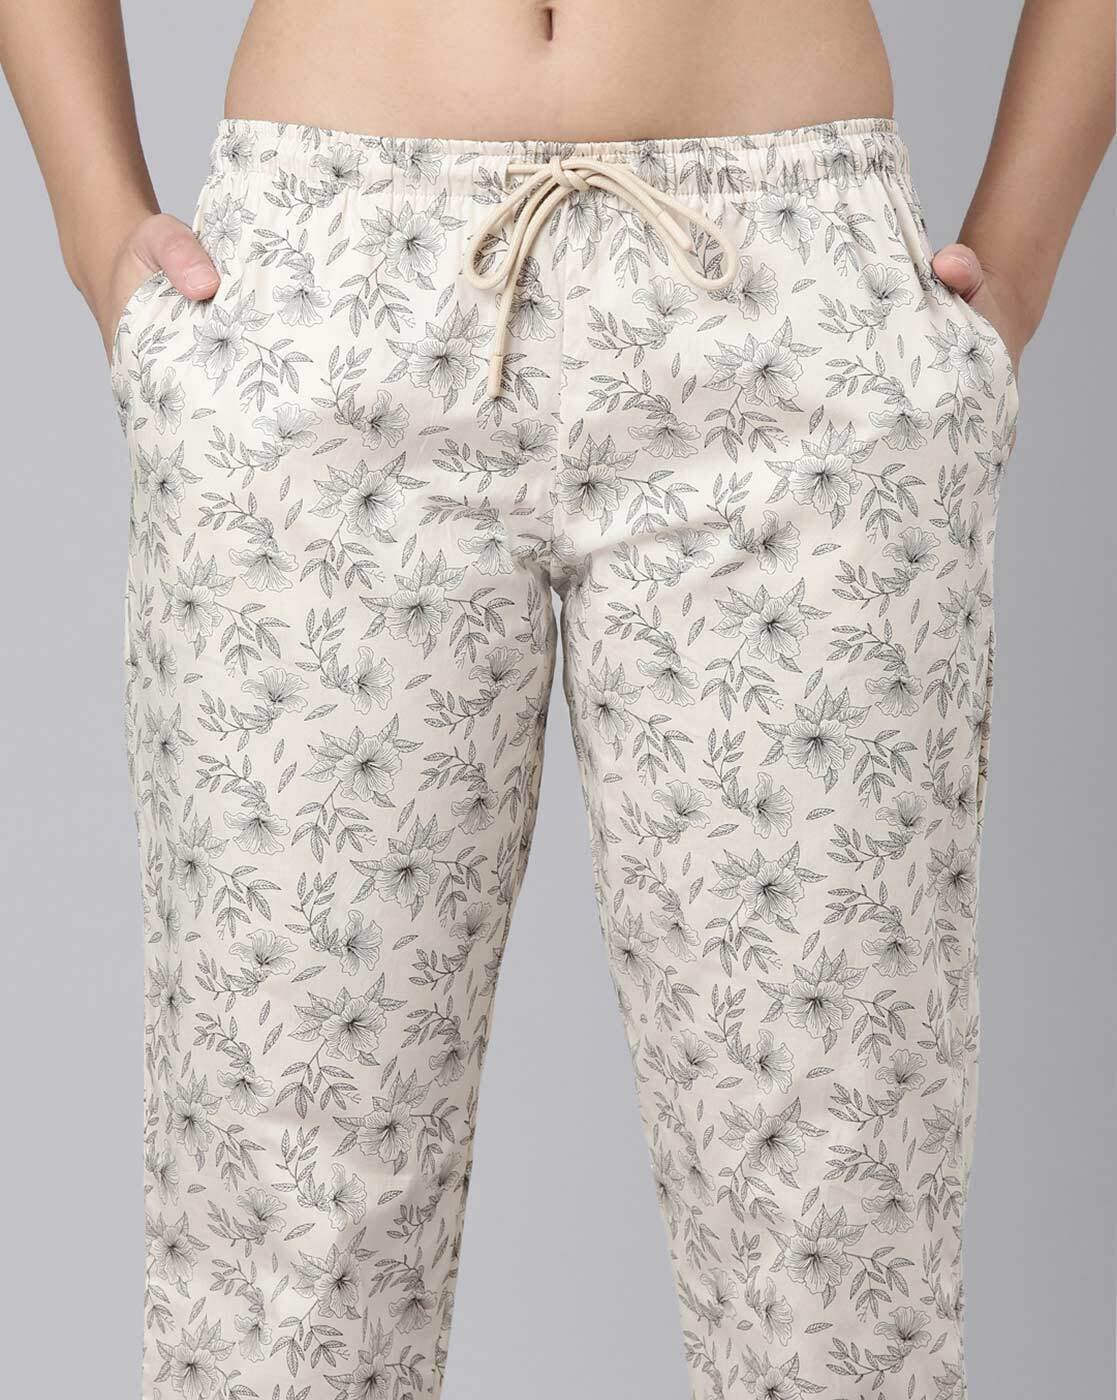 Buy Beige Pyjamas & Shorts for Women by ENAMOR SLEEPWEAR Online